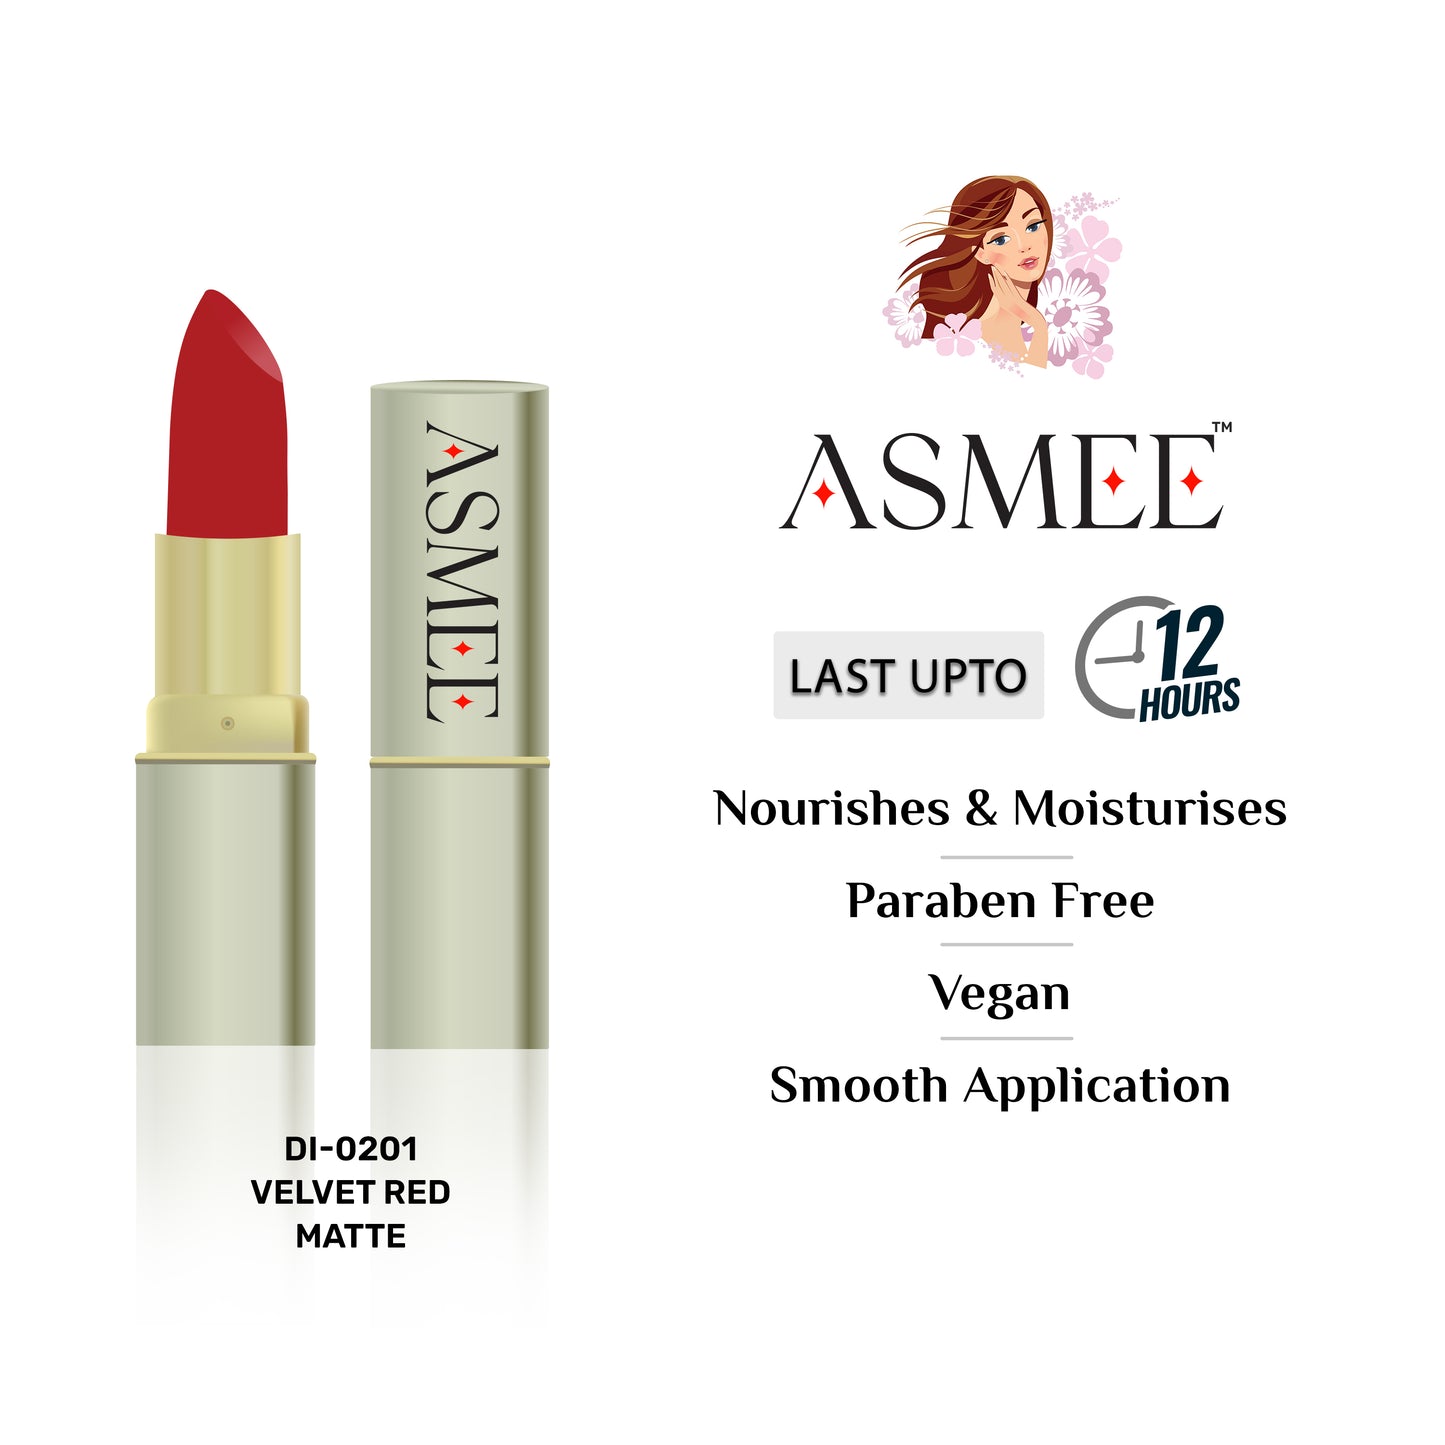 
                  
                    Velvet Red-Asmee Matte Lipstick (4.2g)
                  
                